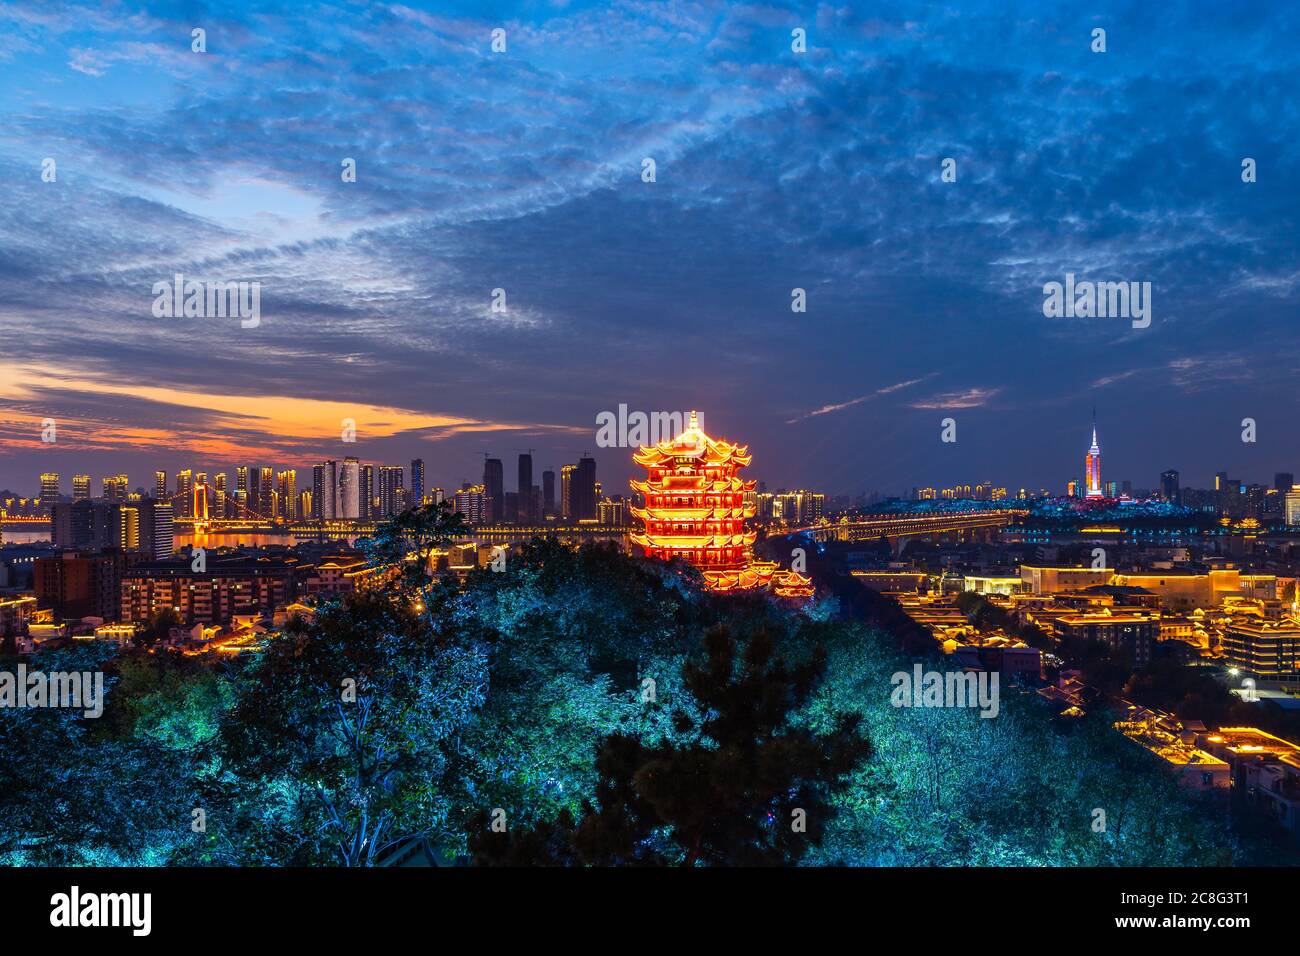 Vue aérienne de la ville de Wuhan. Vue panoramique sur les gratte-ciel et les bâtiments à côté de la rivière yangtze. Banque D'Images